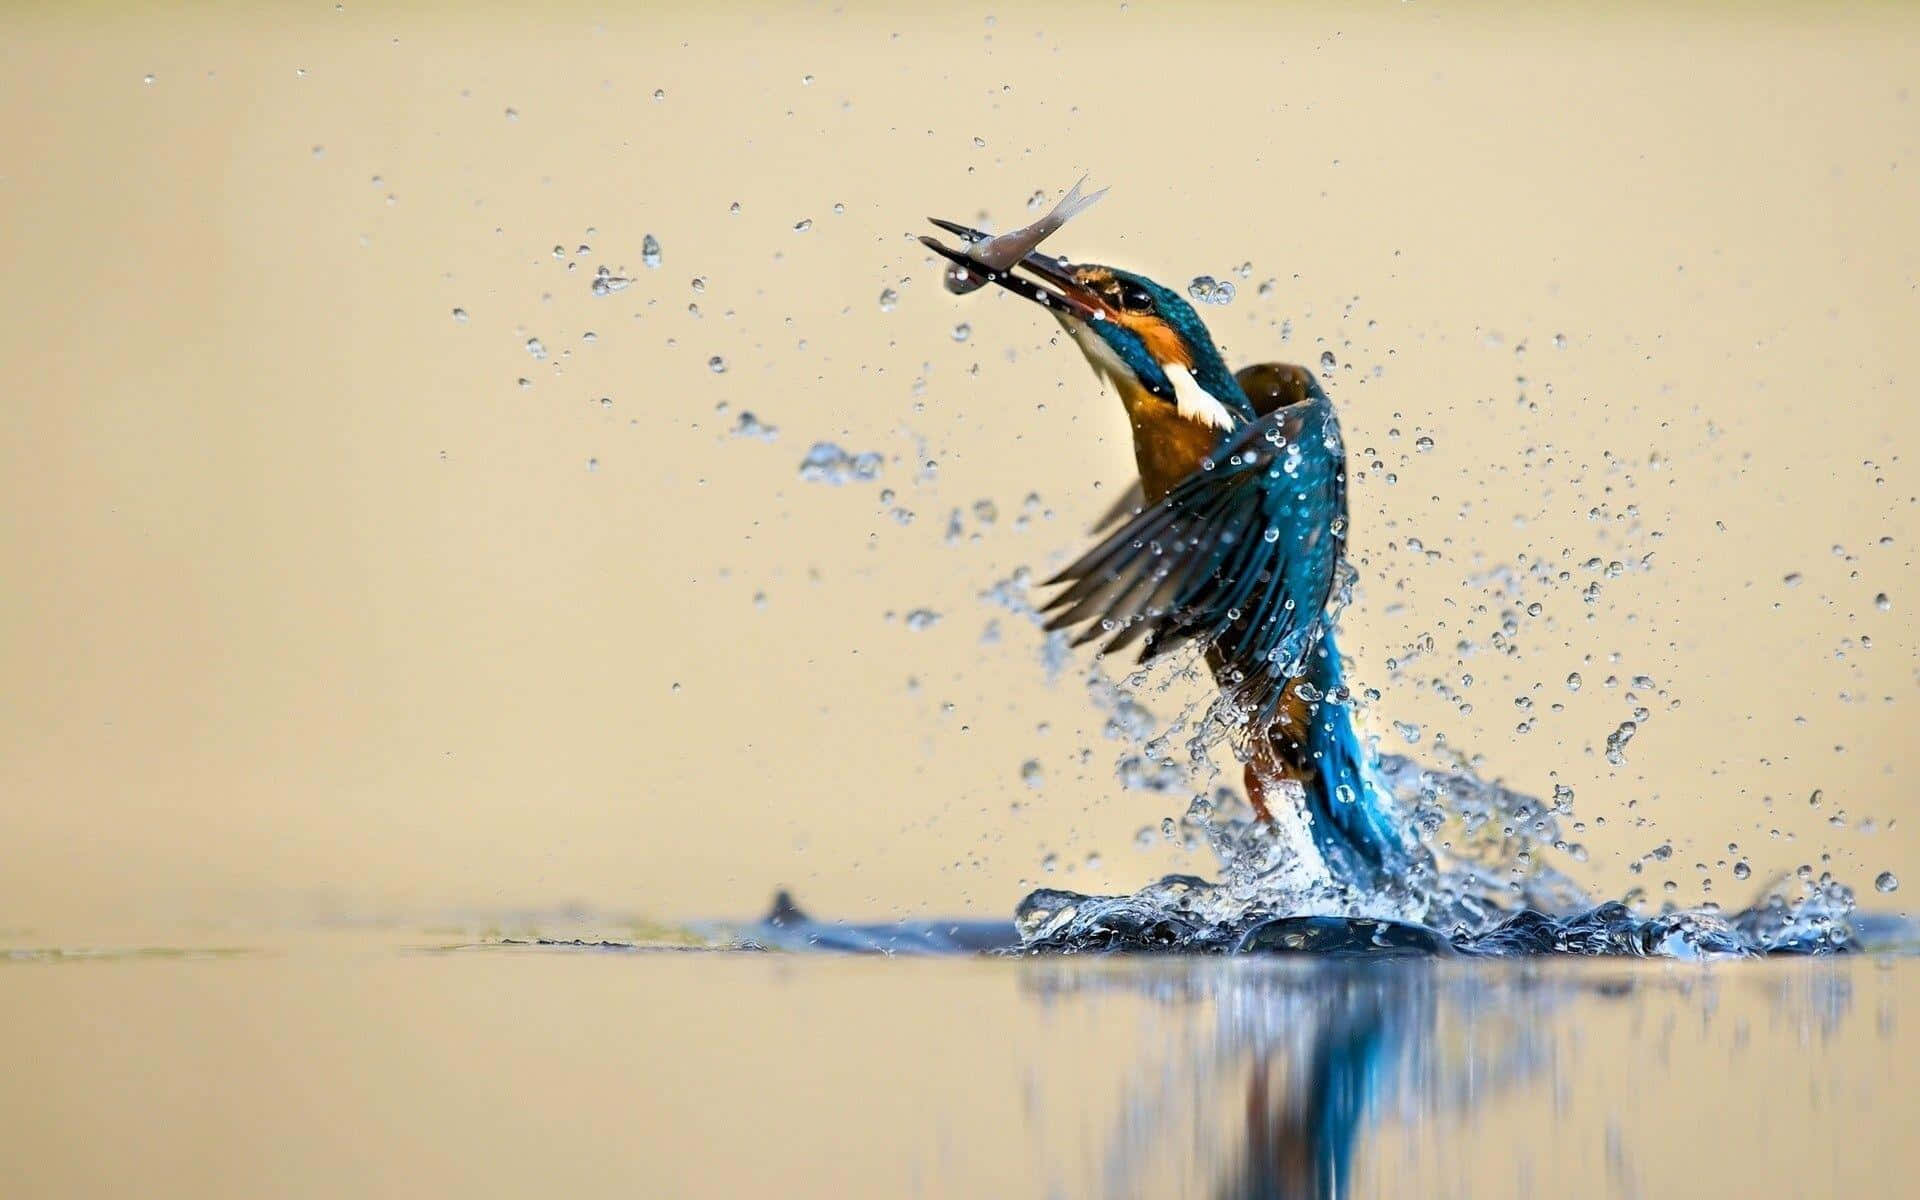 Kingfisher Catching Fish Dynamic Water Splash Wallpaper